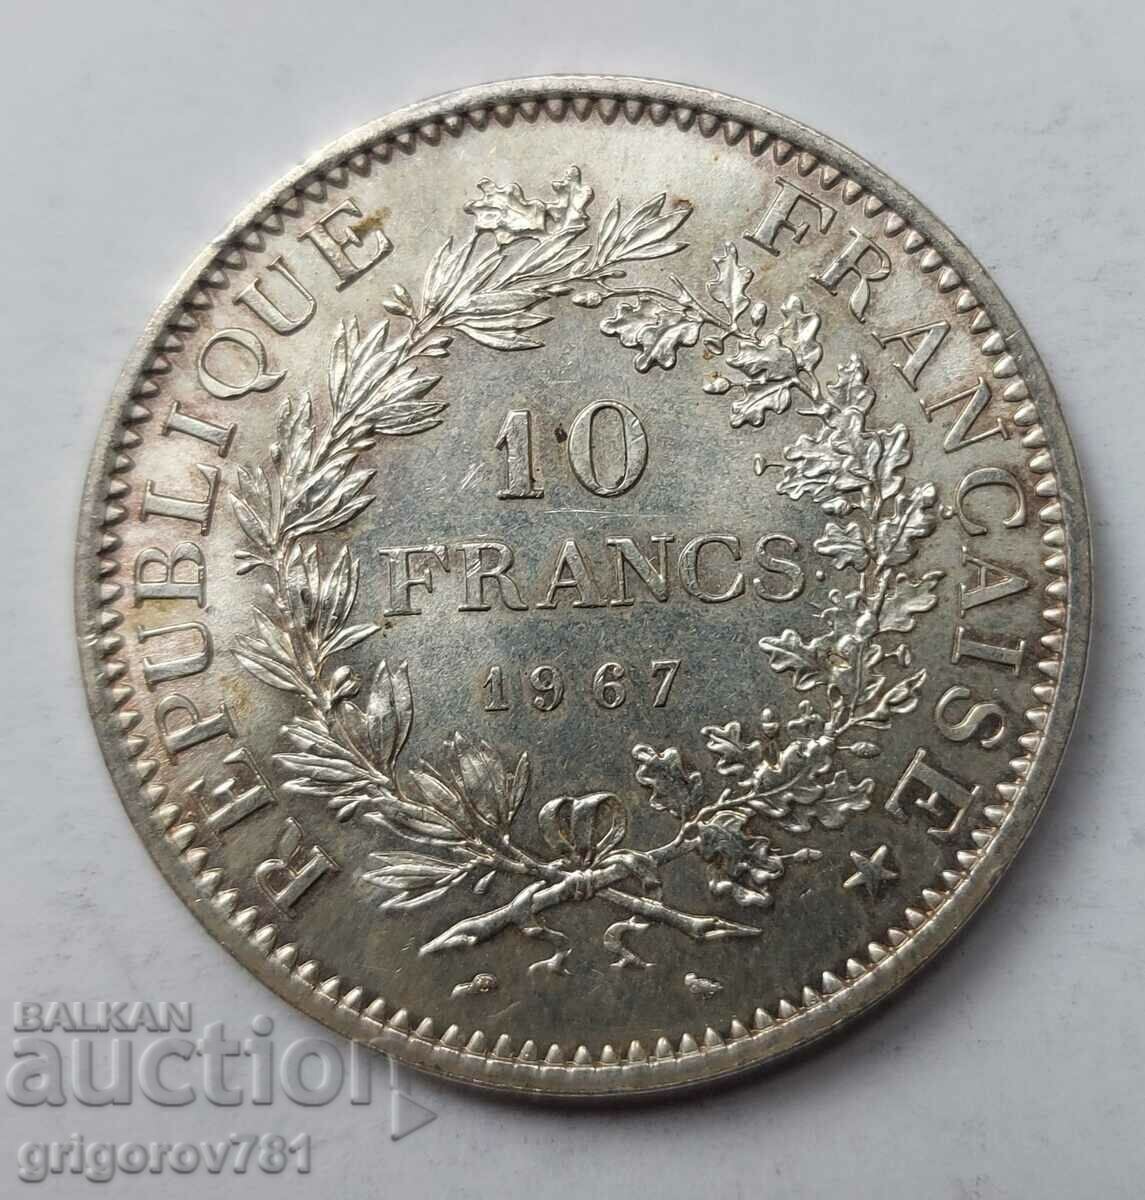 10 Franci Argint Franta 1967 - Moneda de argint #66